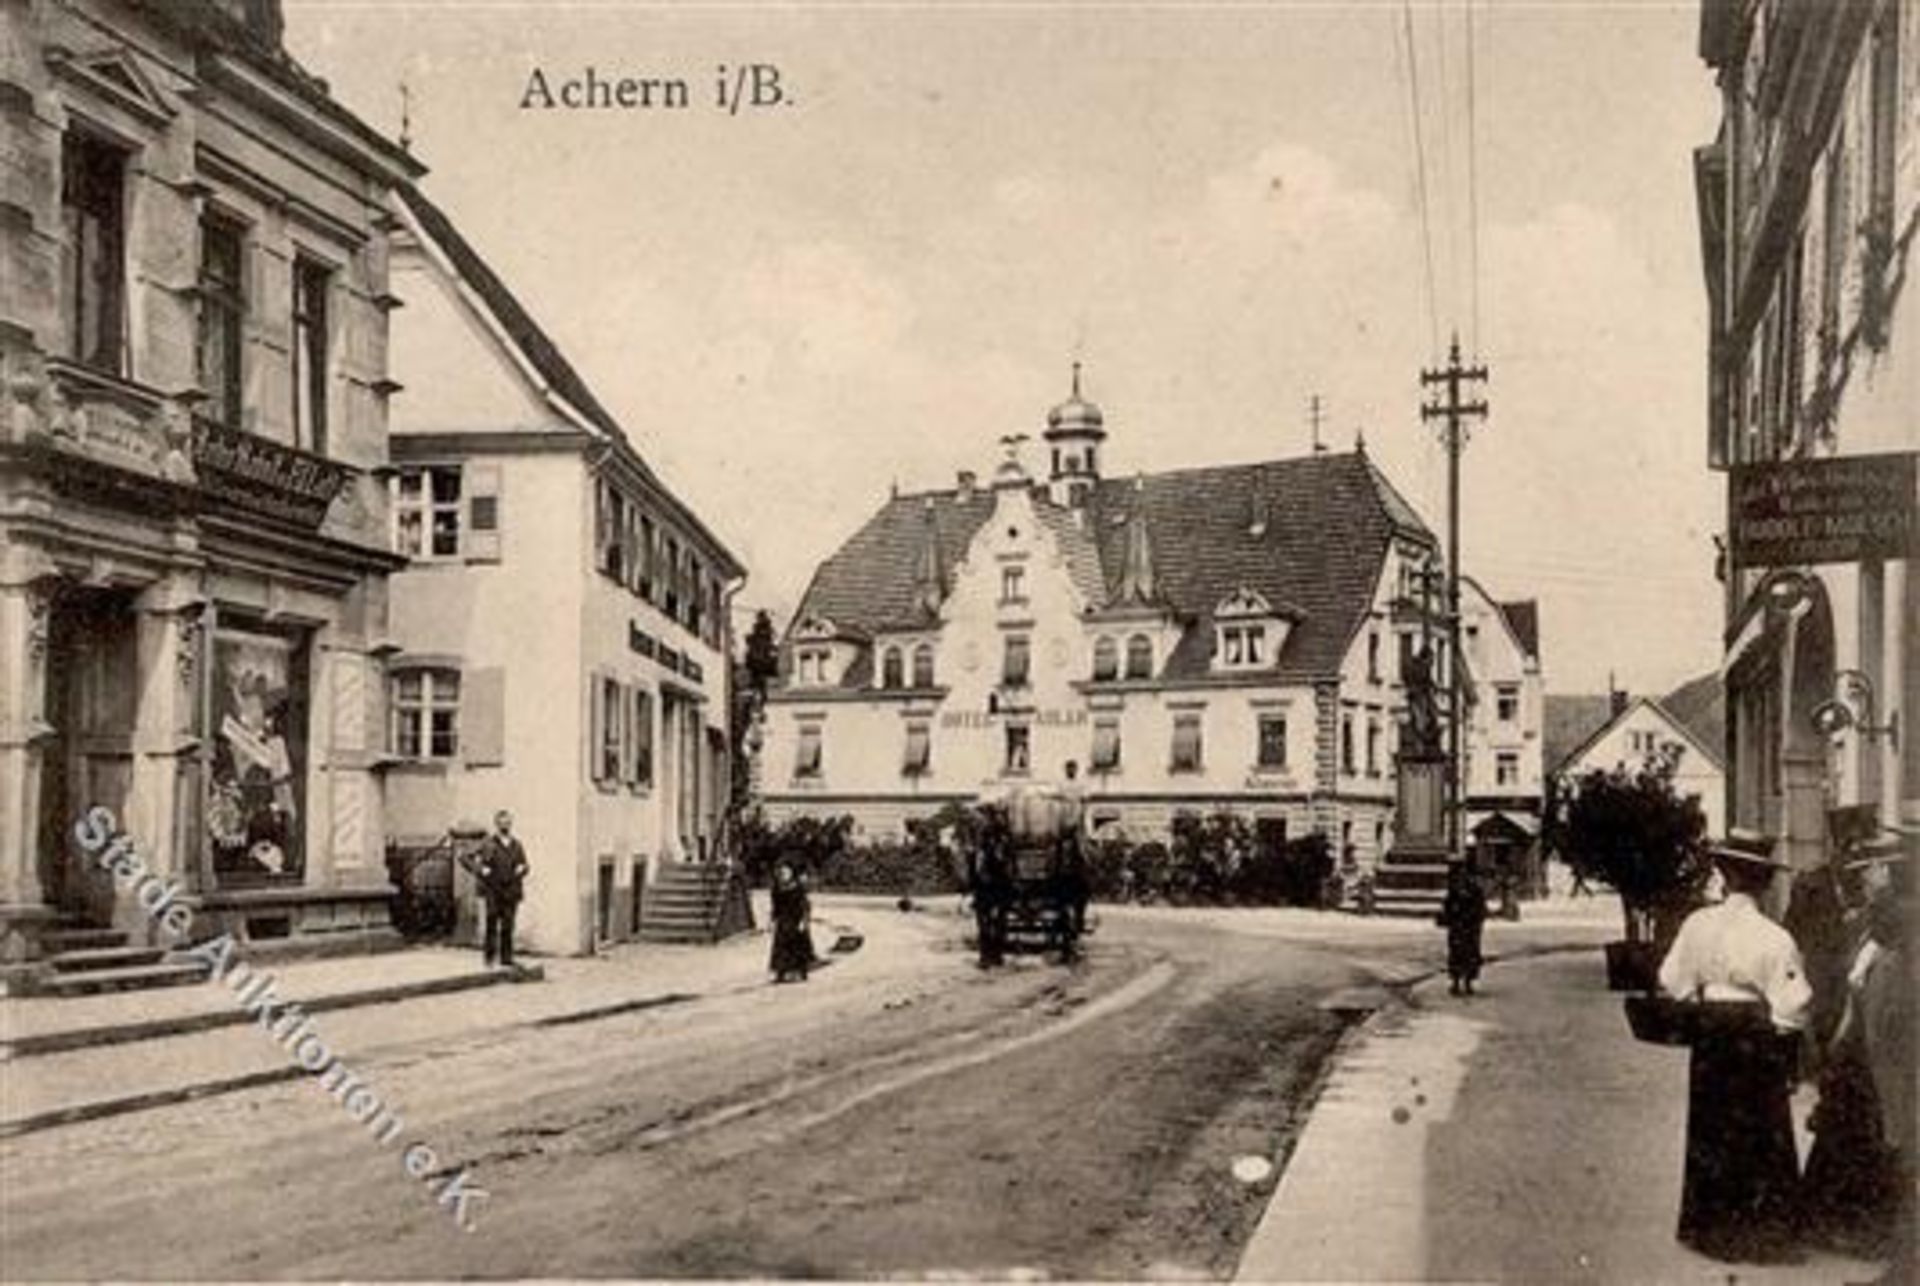 Achern (7590) Hotel Adler Handlung Rudolf Moesch Denkmal 1914 I-IIDieses Los wird in einer online-